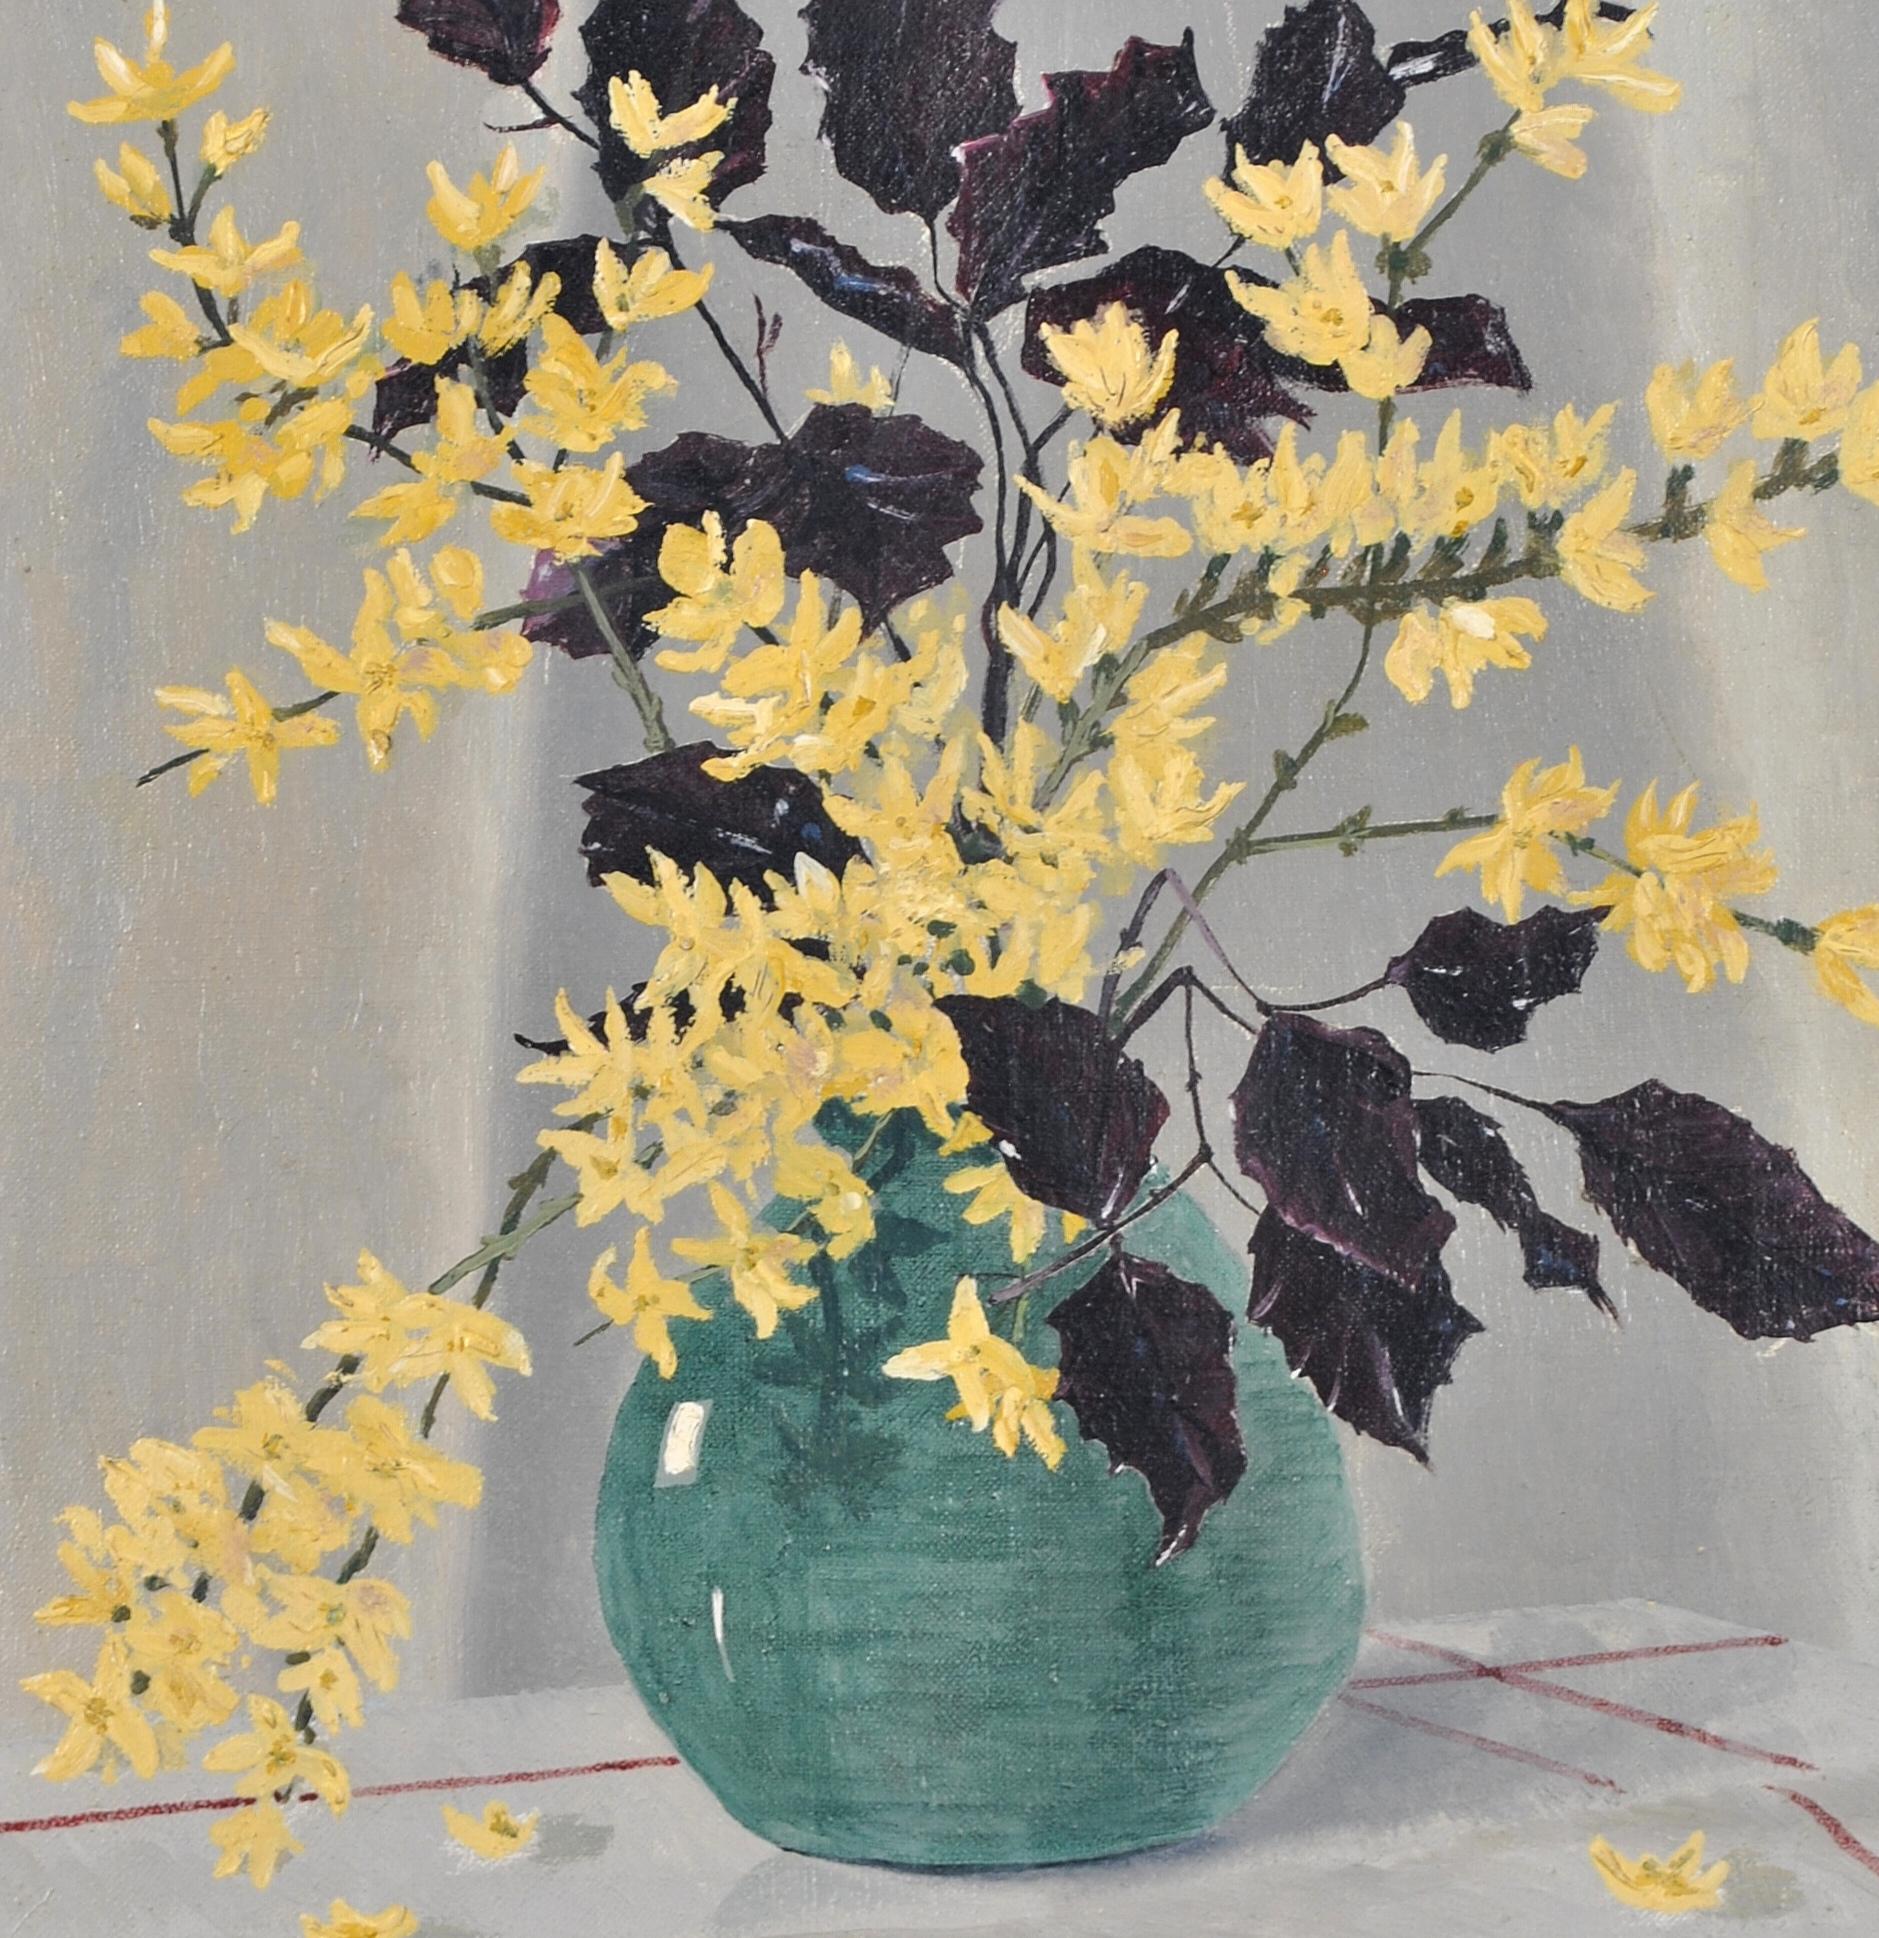 Belle nature morte impressionniste anglaise du début du 20e siècle représentant des fleurs jaunes dans un vase bleu. L'œuvre est présentée dans une jolie boîte en bois de style shabby.  cadre peint à l'ancienne qui le complète parfaitement. Signé